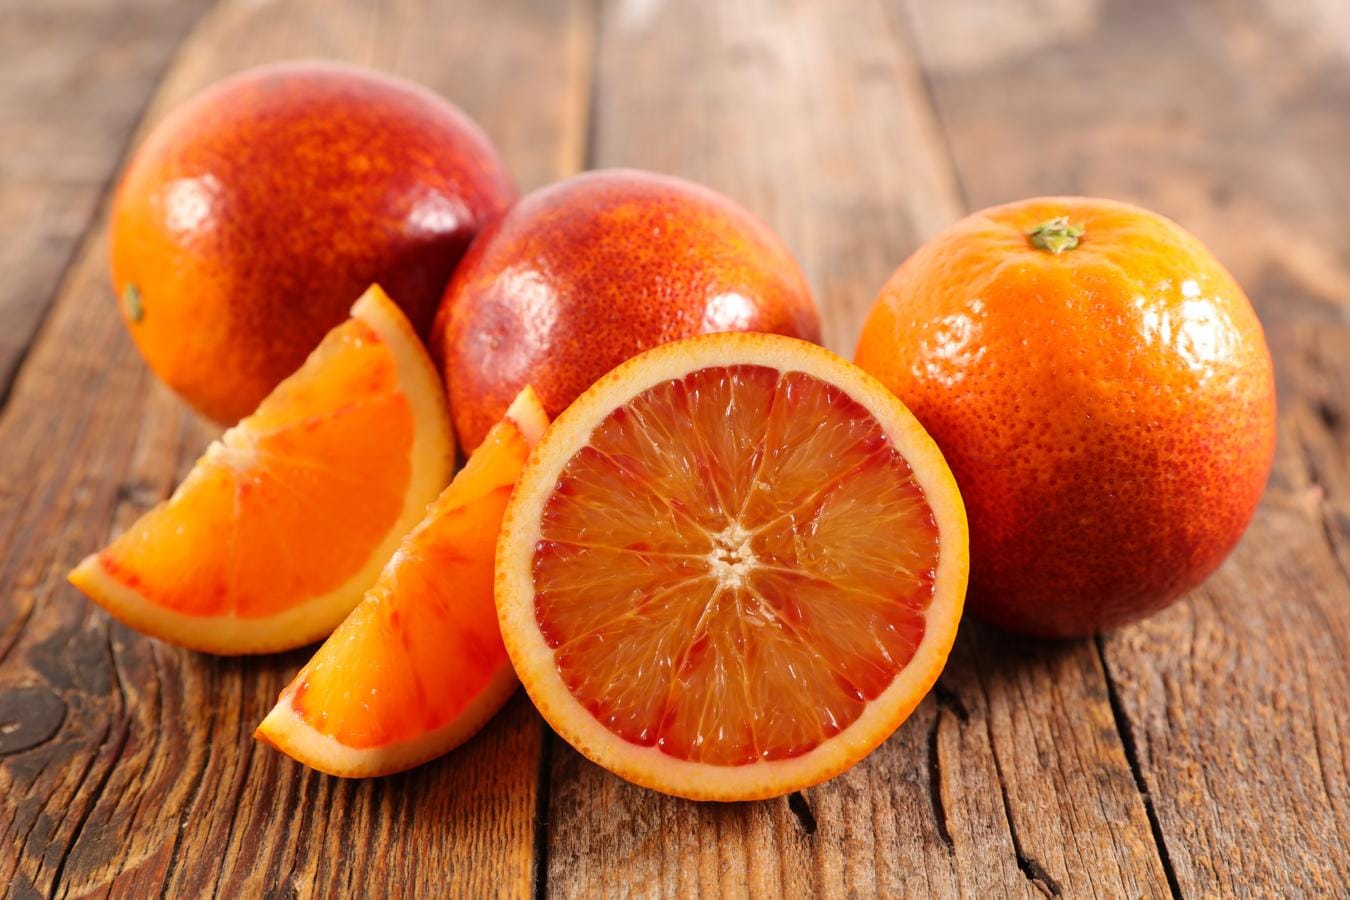 Naranja. Como toda fruta y verdura, la <a href="https://www.abc.es/bienestar/alimentacion/recetas-saludables/abci-naranja-beneficios-y-recetas-fruta-temporada-202011060247_noticia.html" target="_blank">naranja </a>es un buen energizante. Esta fruta ayuda a frenar el envejecimiento celular y de la piel. Esto se debe a que esta fruta aporta vitamina C a nuestro organismo, imprescindible para el desarrollo y crecimiento de nuestro cuerpo. Destaca por su capacidad antioxidante, que ayuda a mejorar la absorción del hierro, por lo que es ideal para incluir en platos ricos en este mineral. Hay que tener en cuenta que contienen también 38 kcal de energía por cada 100 gramos del producto, según los datos de la Bedca.